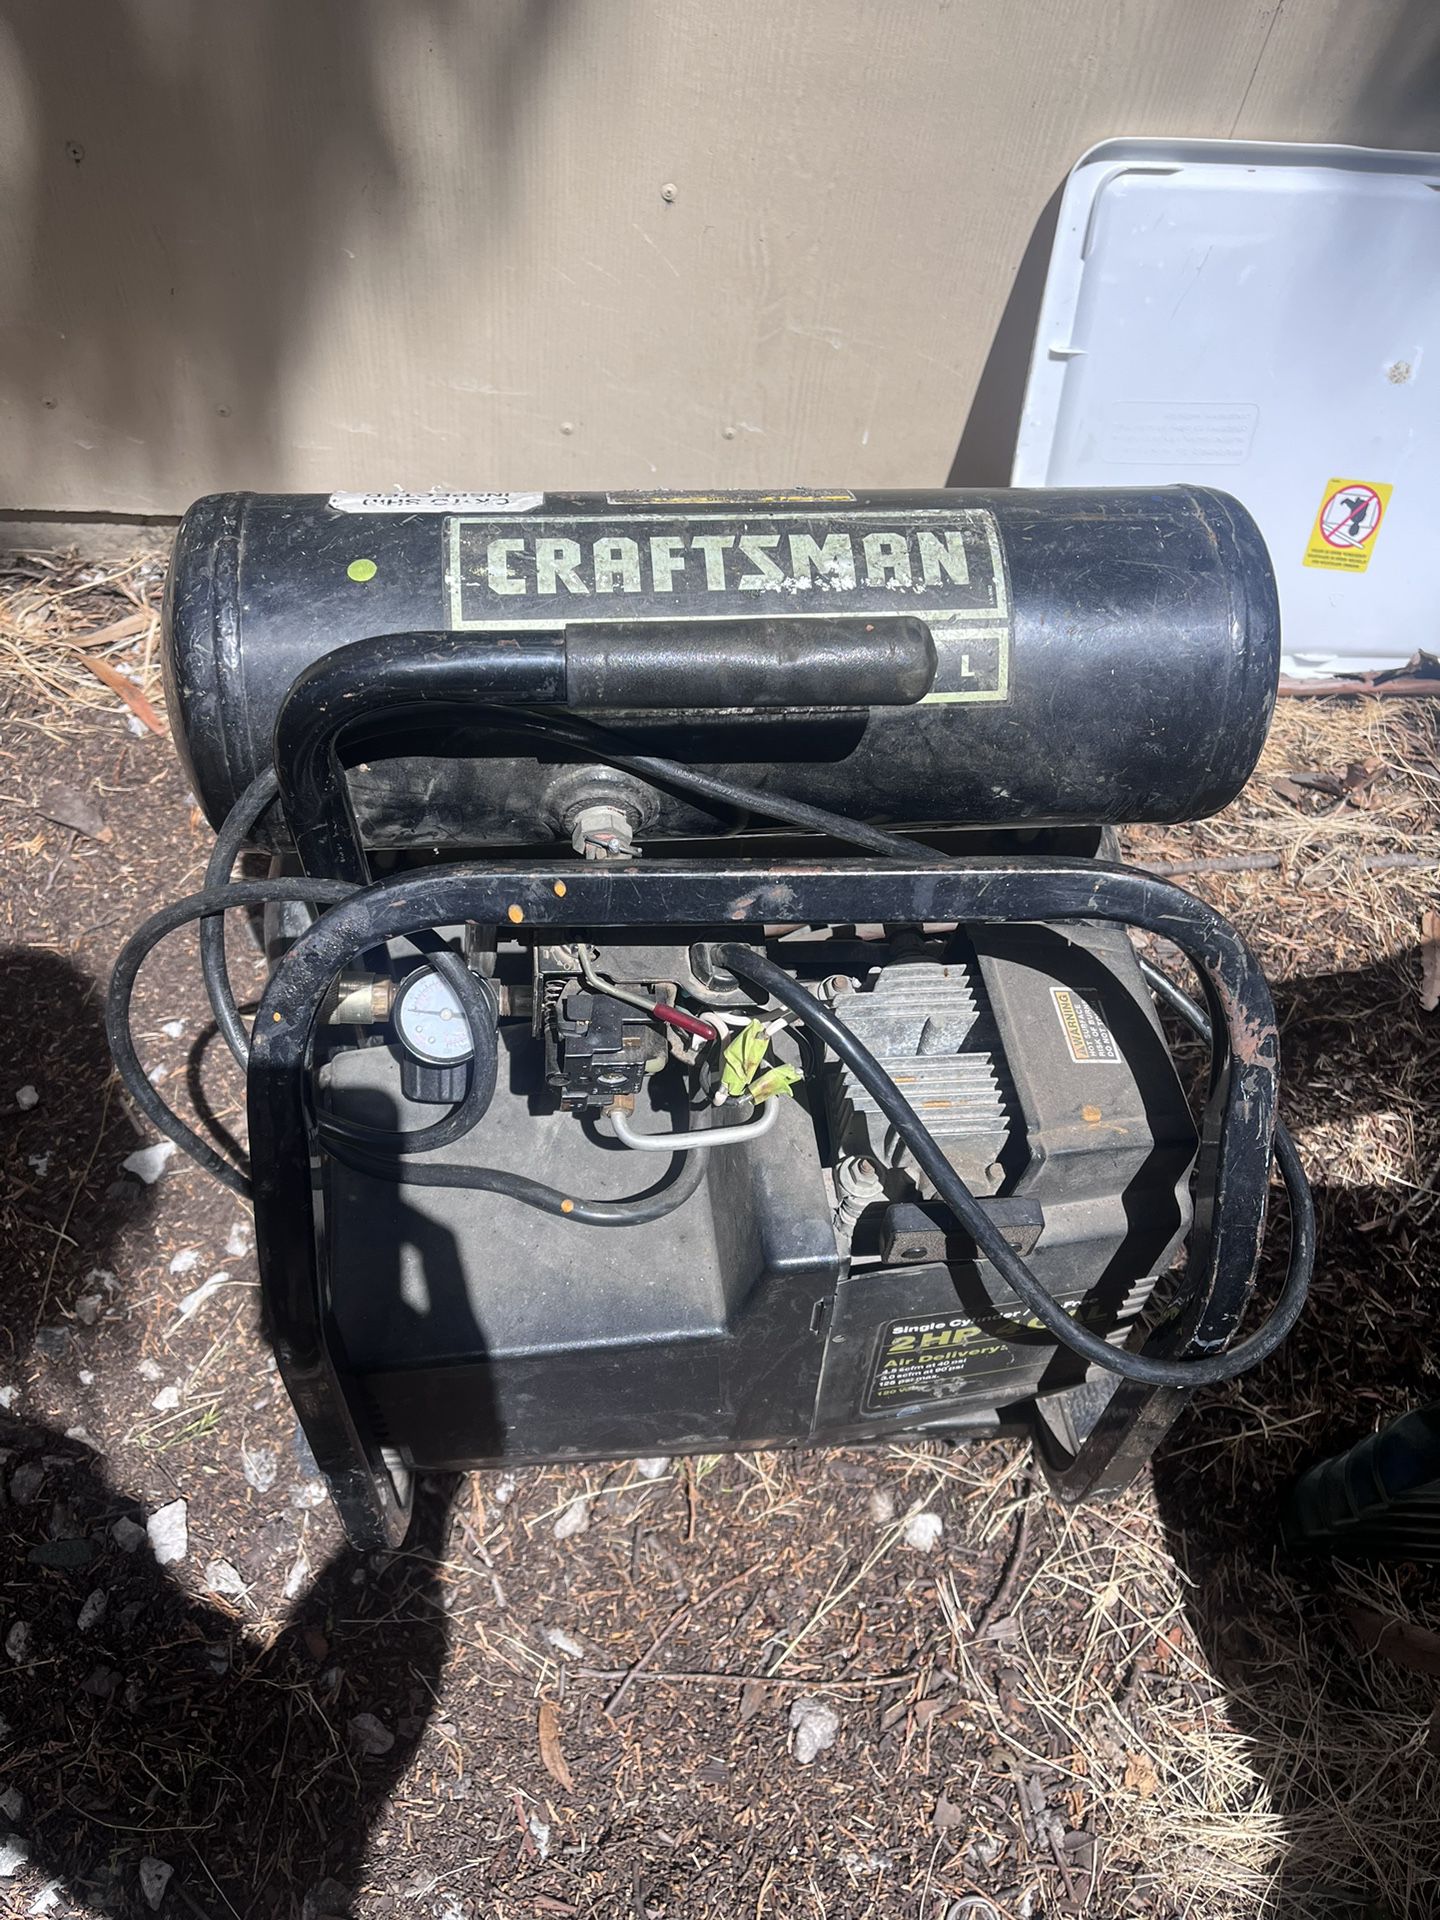 Craftsman Professional Air Compressor